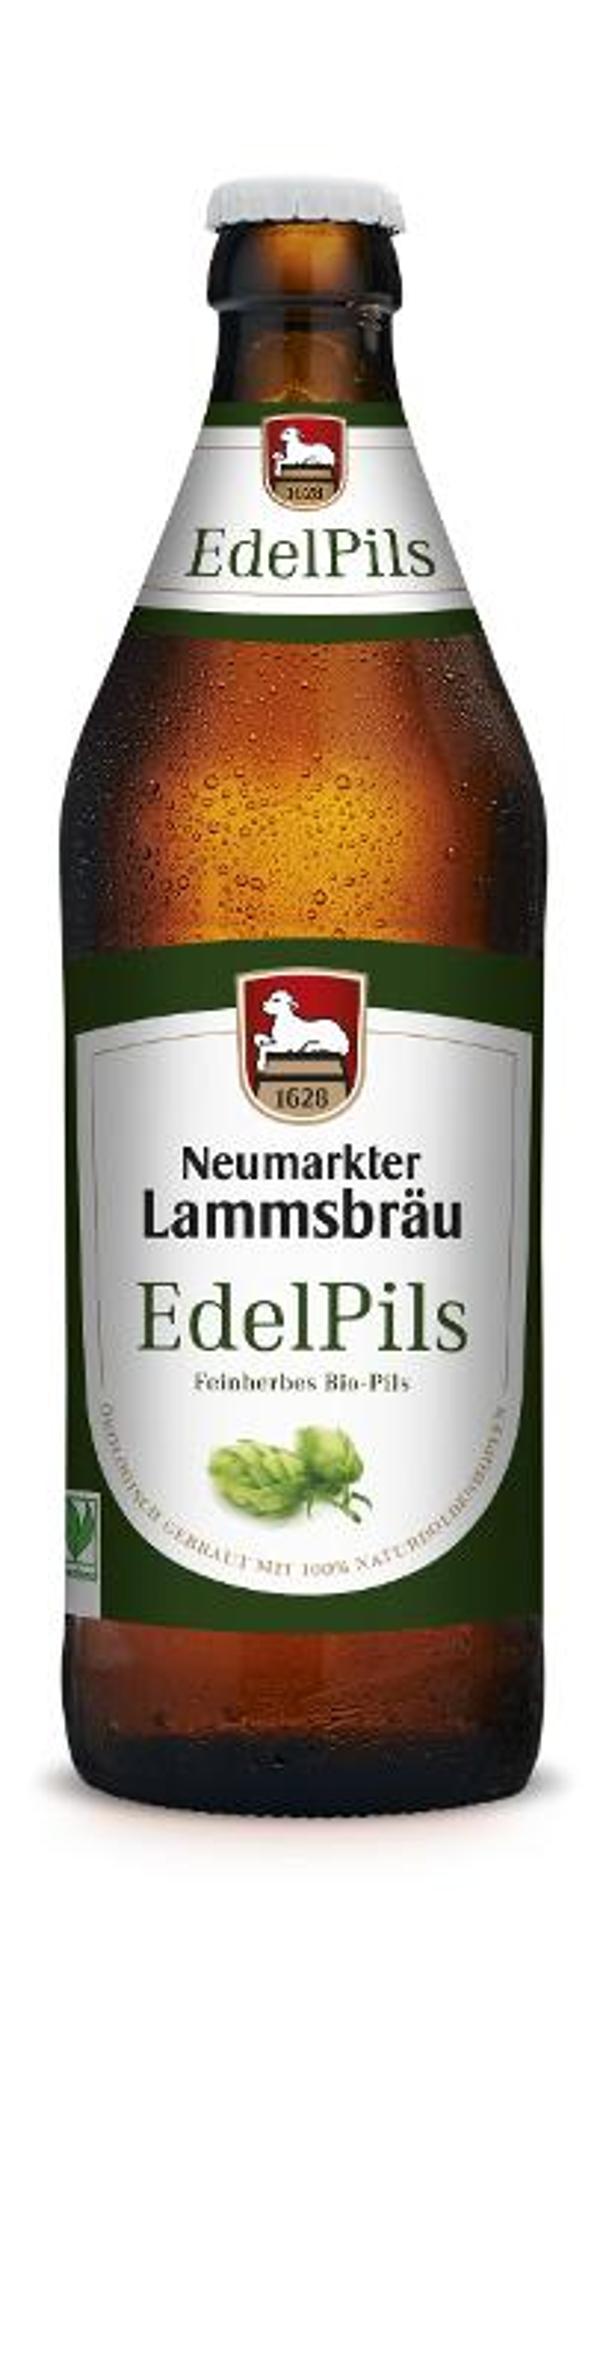 Produktfoto zu Lammsbräu Edelpils 10x0,5l